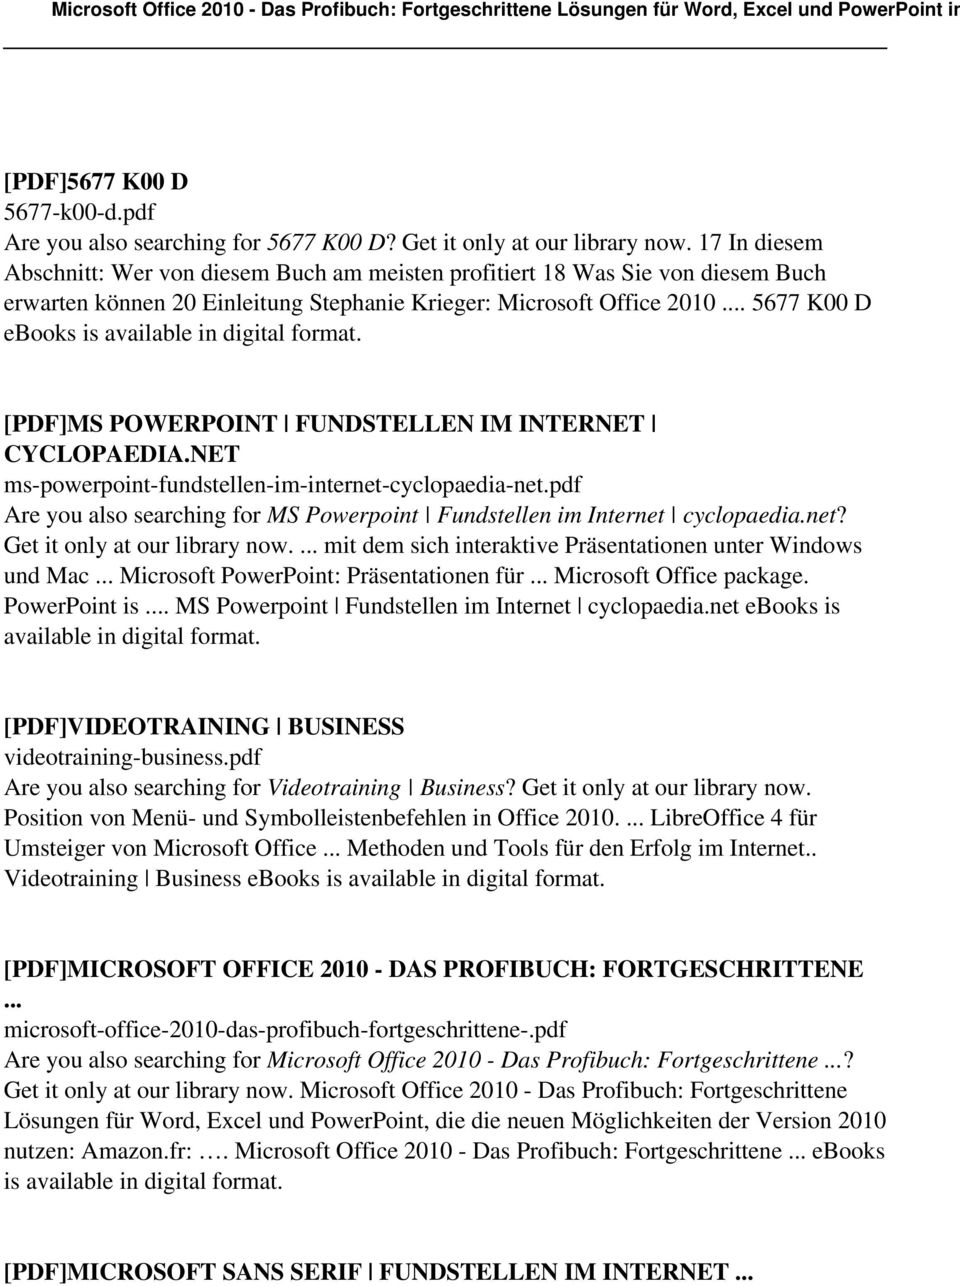 5677 K00 D ebooks is [PDF]MS POWERPOINT FUNDSTELLEN IM INTERNET CYCLOPAEDIA.NET ms-powerpoint-fundstellen-im-internet-cyclopaedia-net.